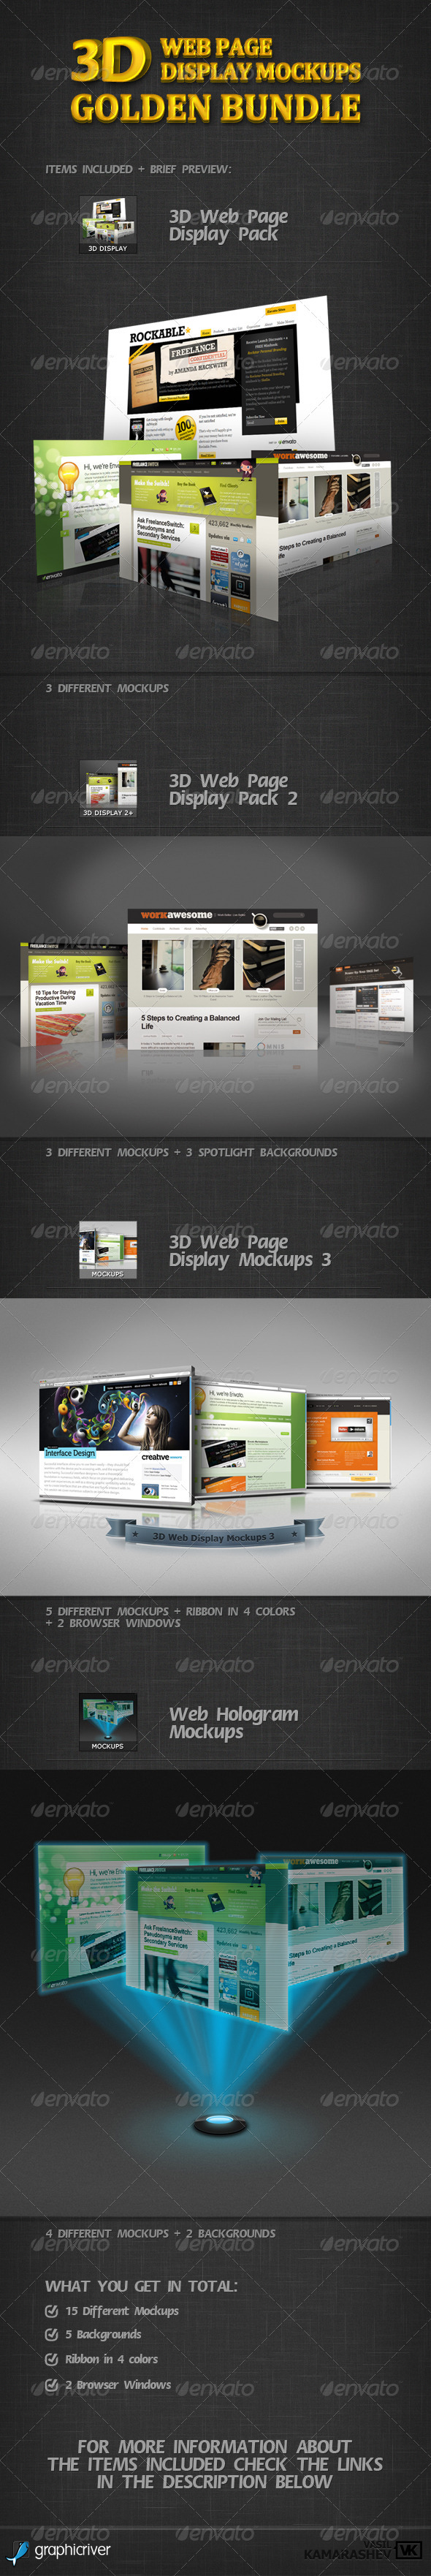 Download 3D Web Page Display Mockups Golden Bundle by kamarashev | GraphicRiver